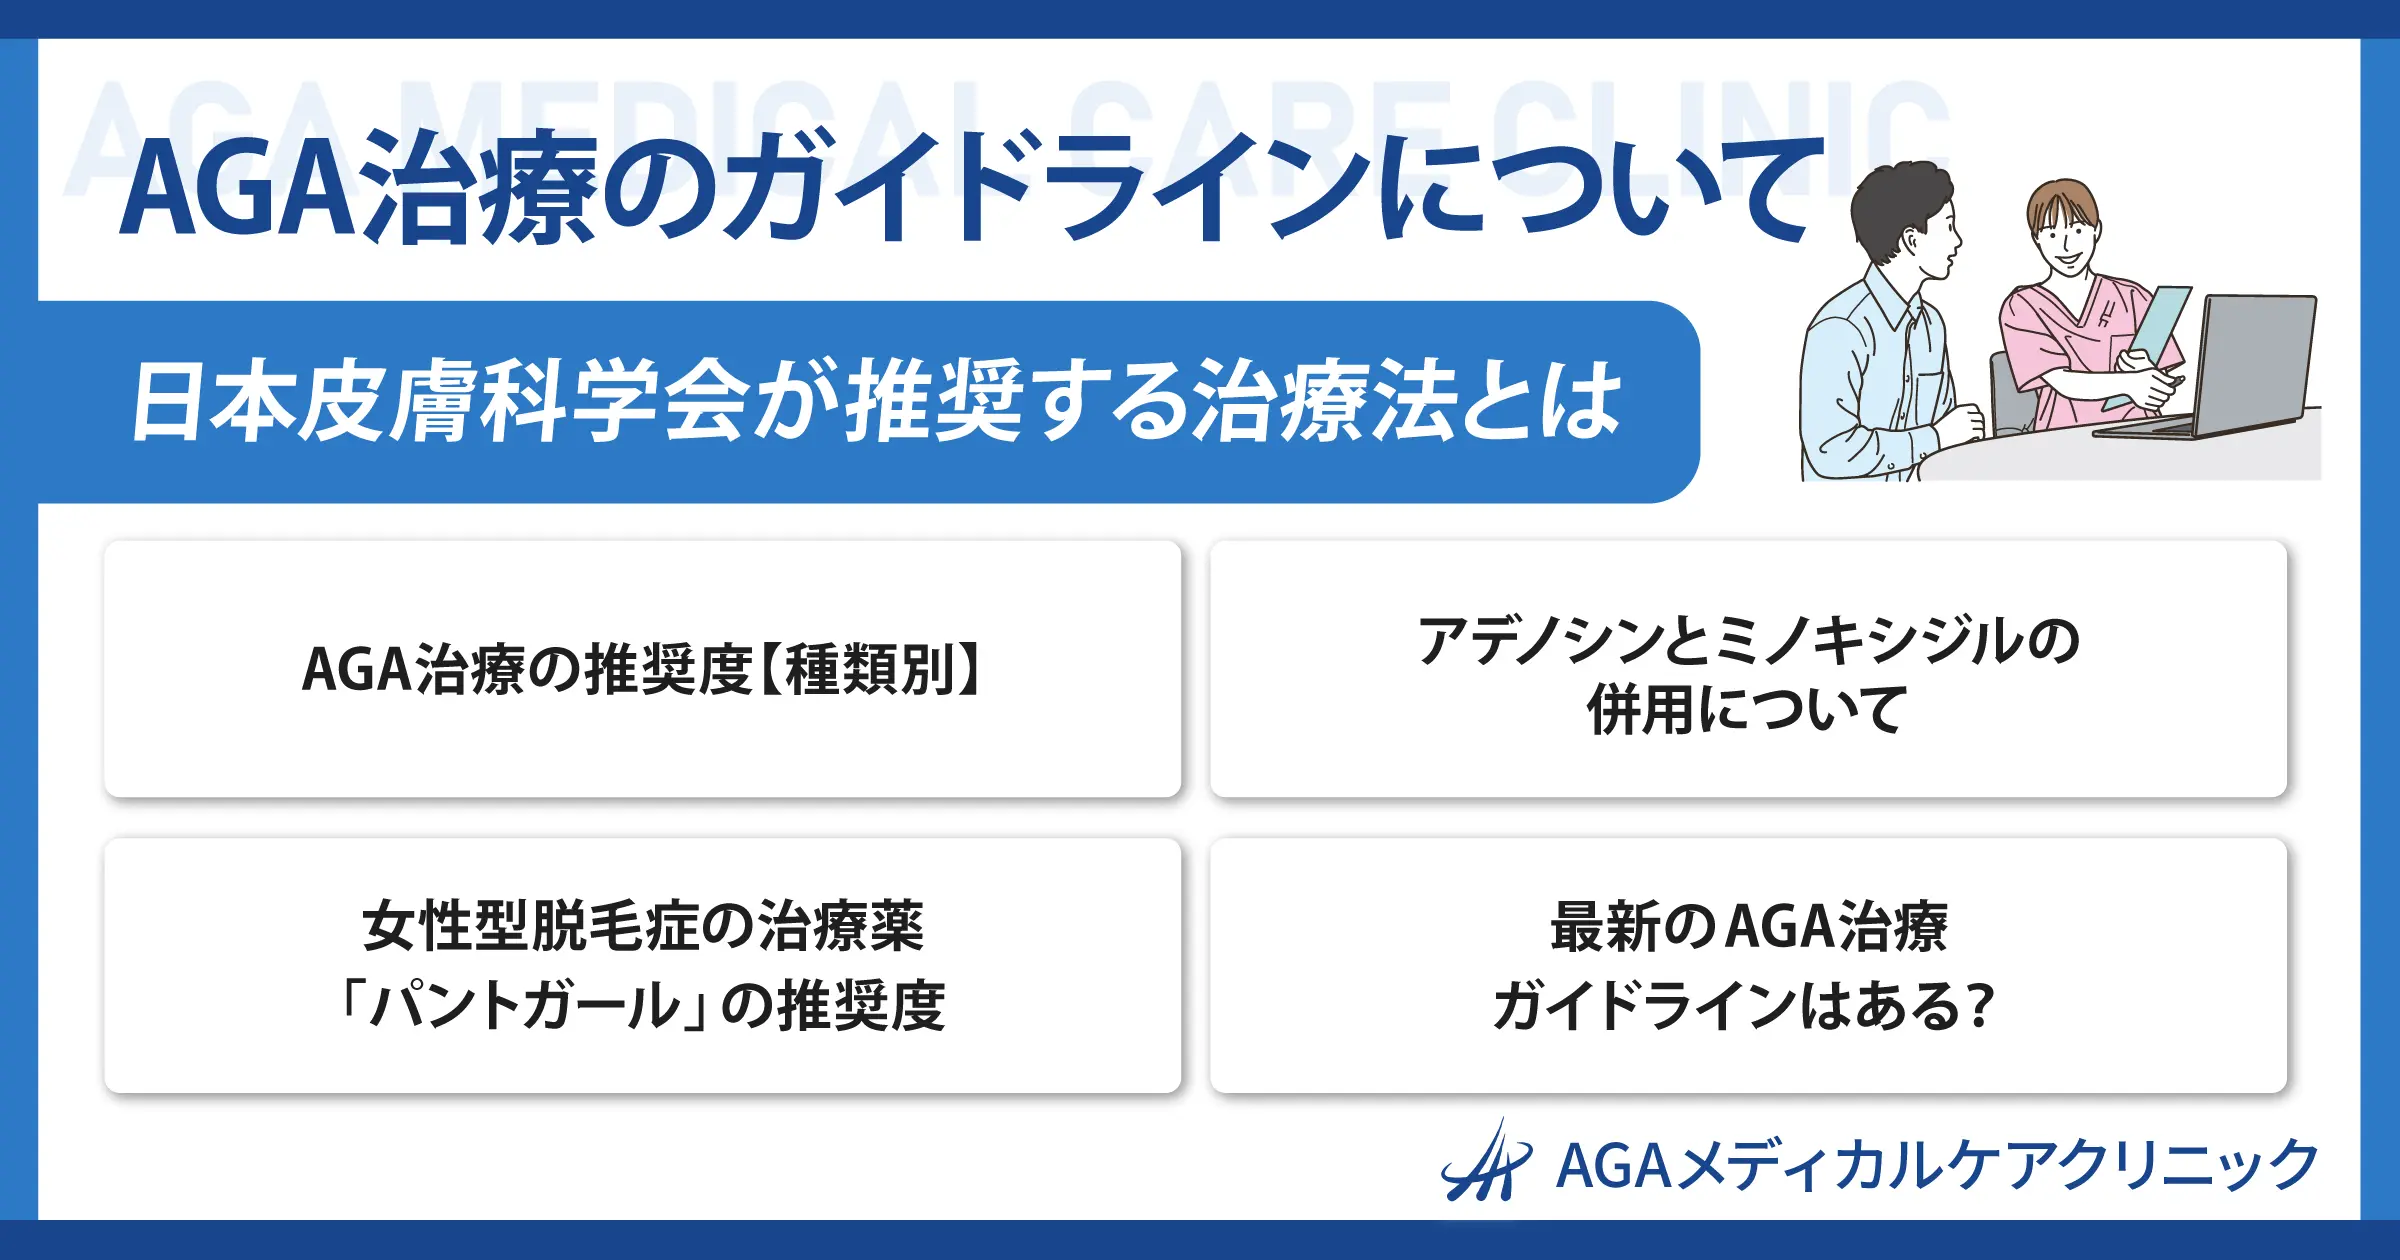 【AGA治療のガイドラインについて】日本皮膚科学会が推奨する治療法とは